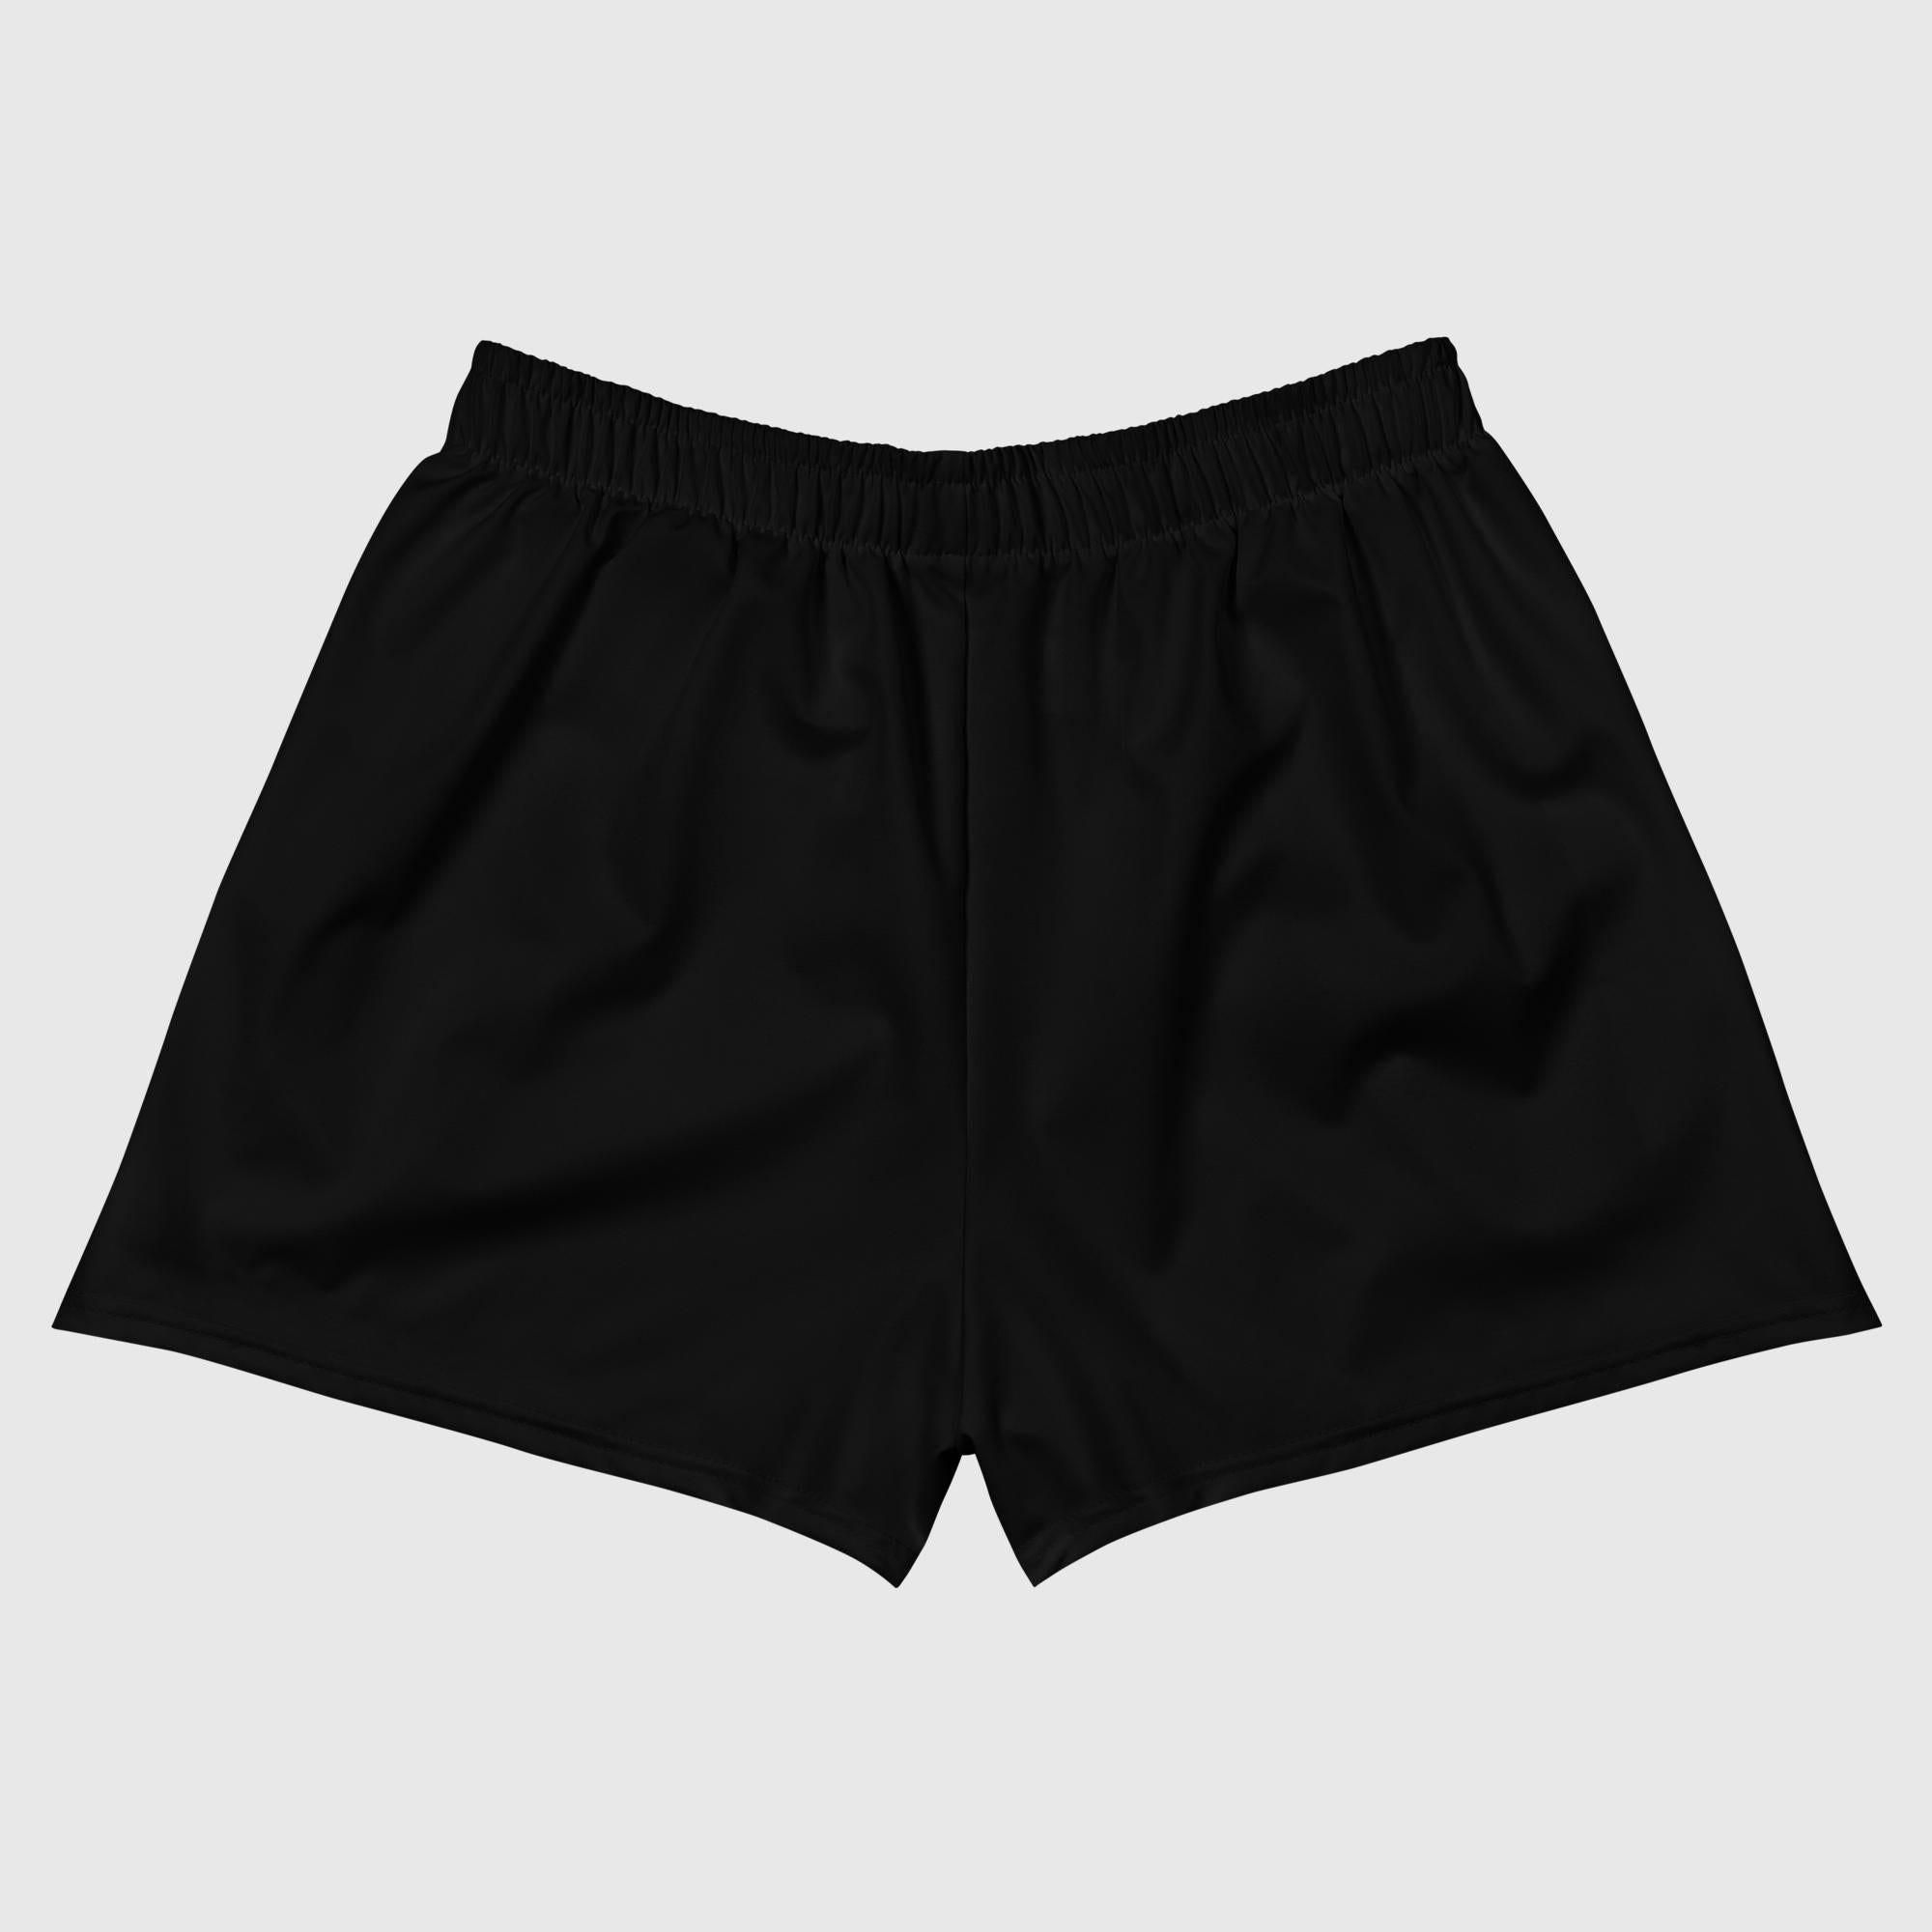 Pantalón corto deportivo para mujer - Negro